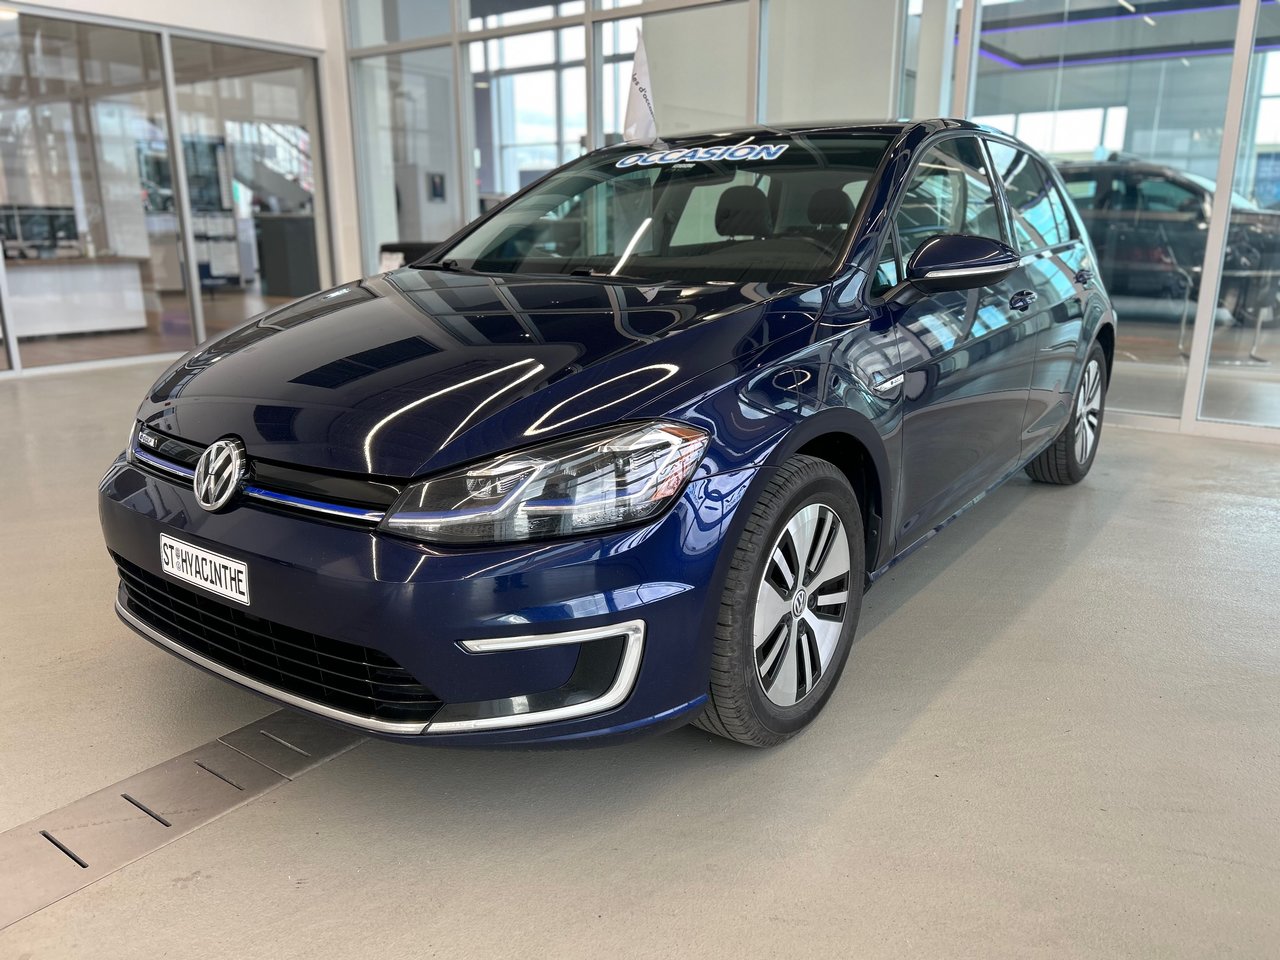 2019 Volkswagen e-Golf Comfortline FWD